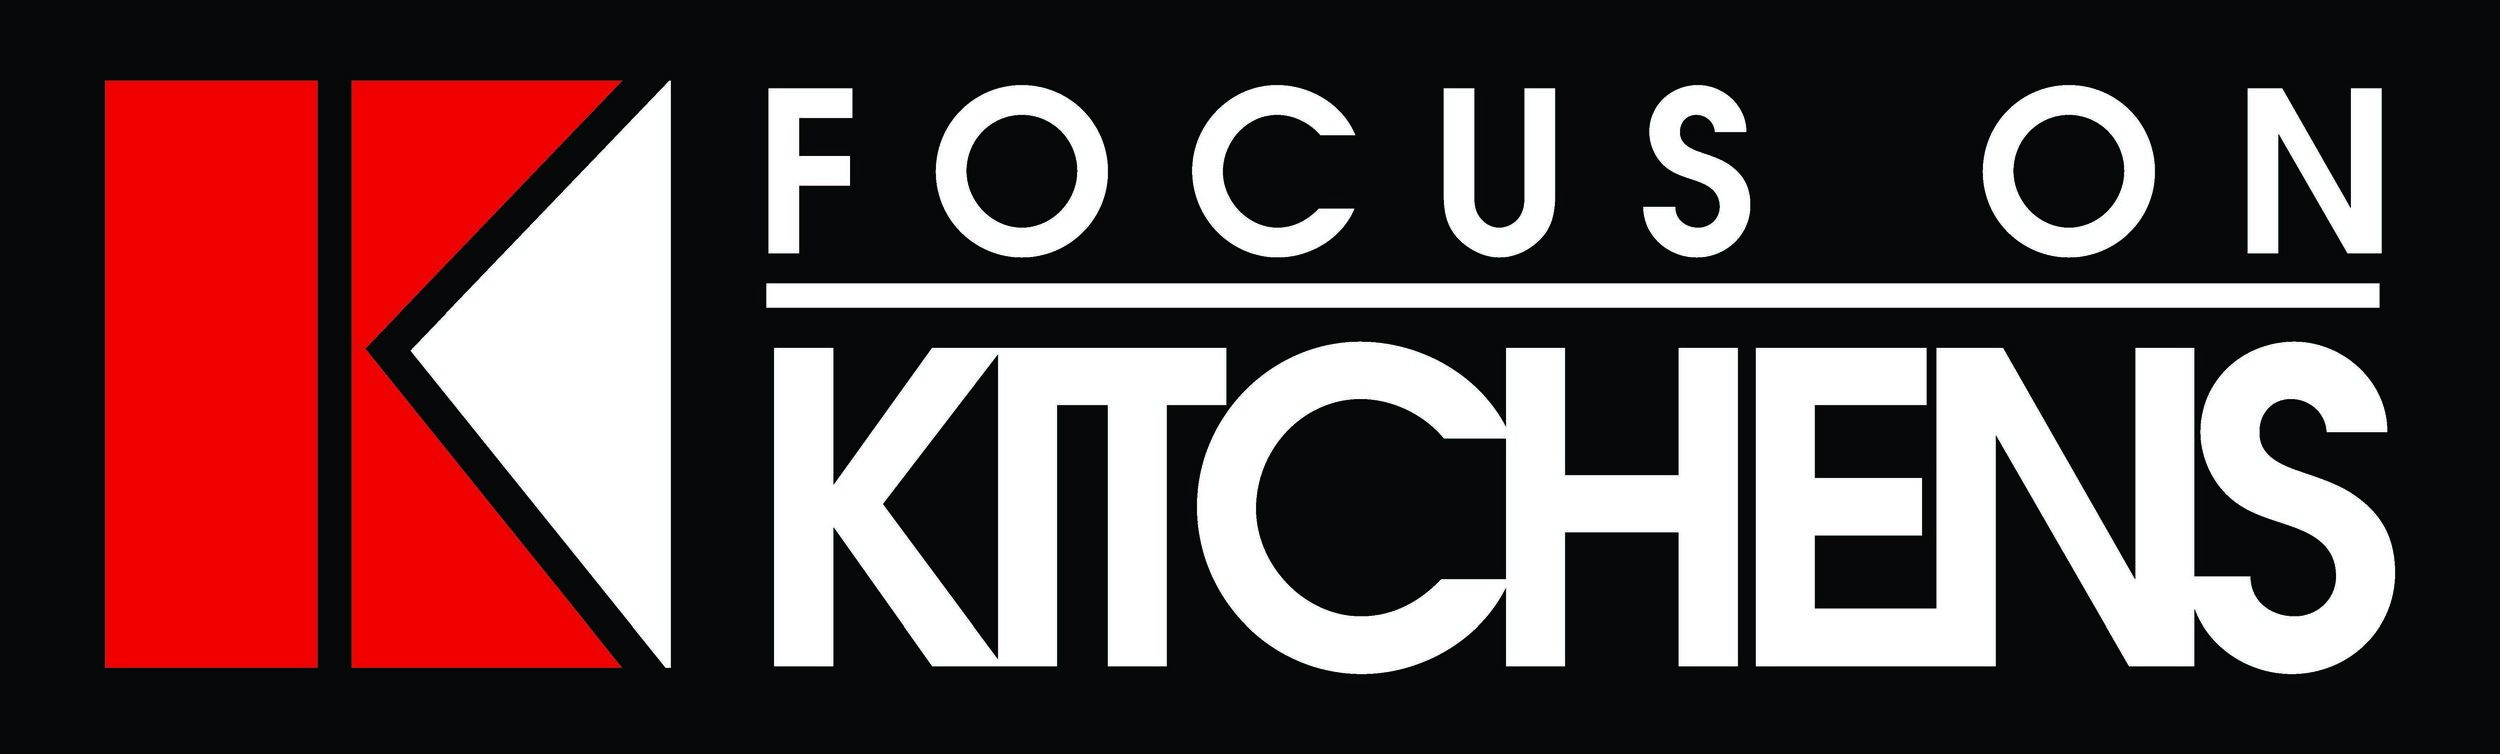 Focus on Kitchens